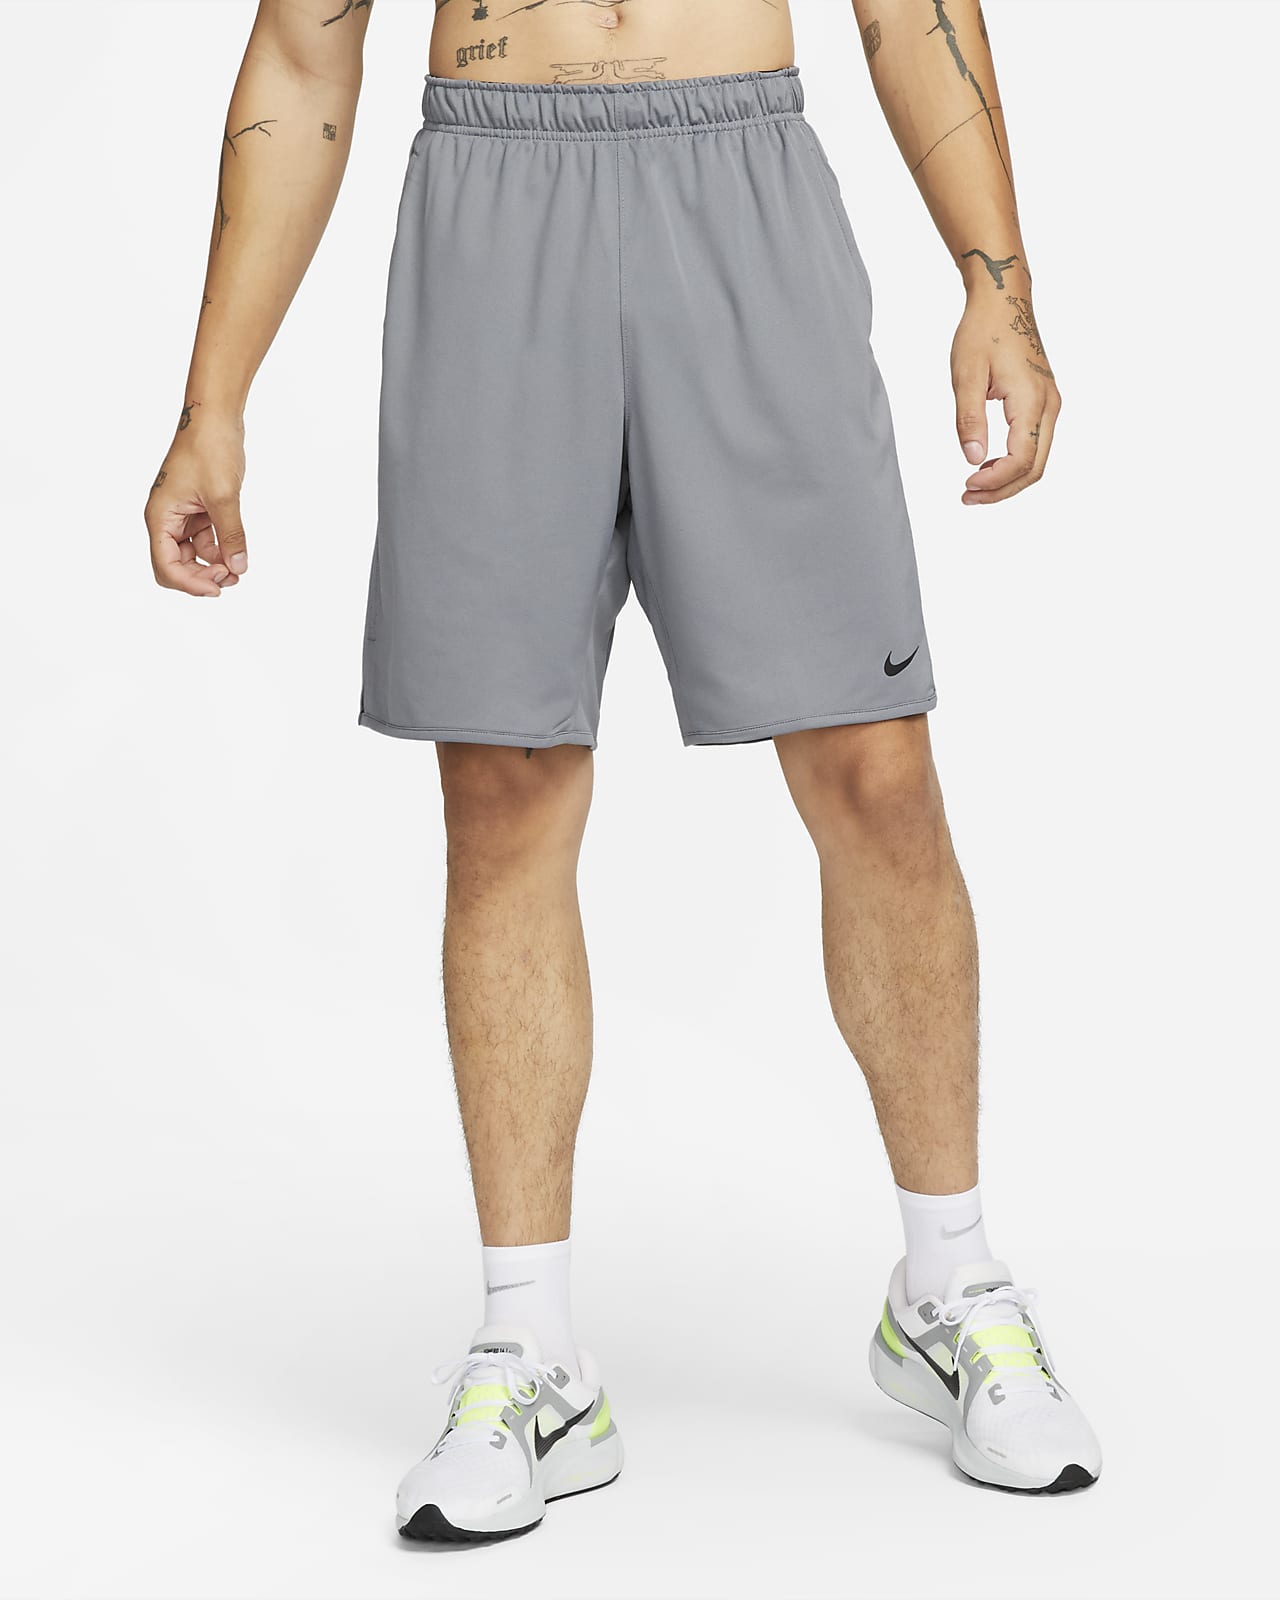 Nike Totality Dri-FIT 23 cm-es, bélés nélküli, sokoldalú férfi rövidnadrág